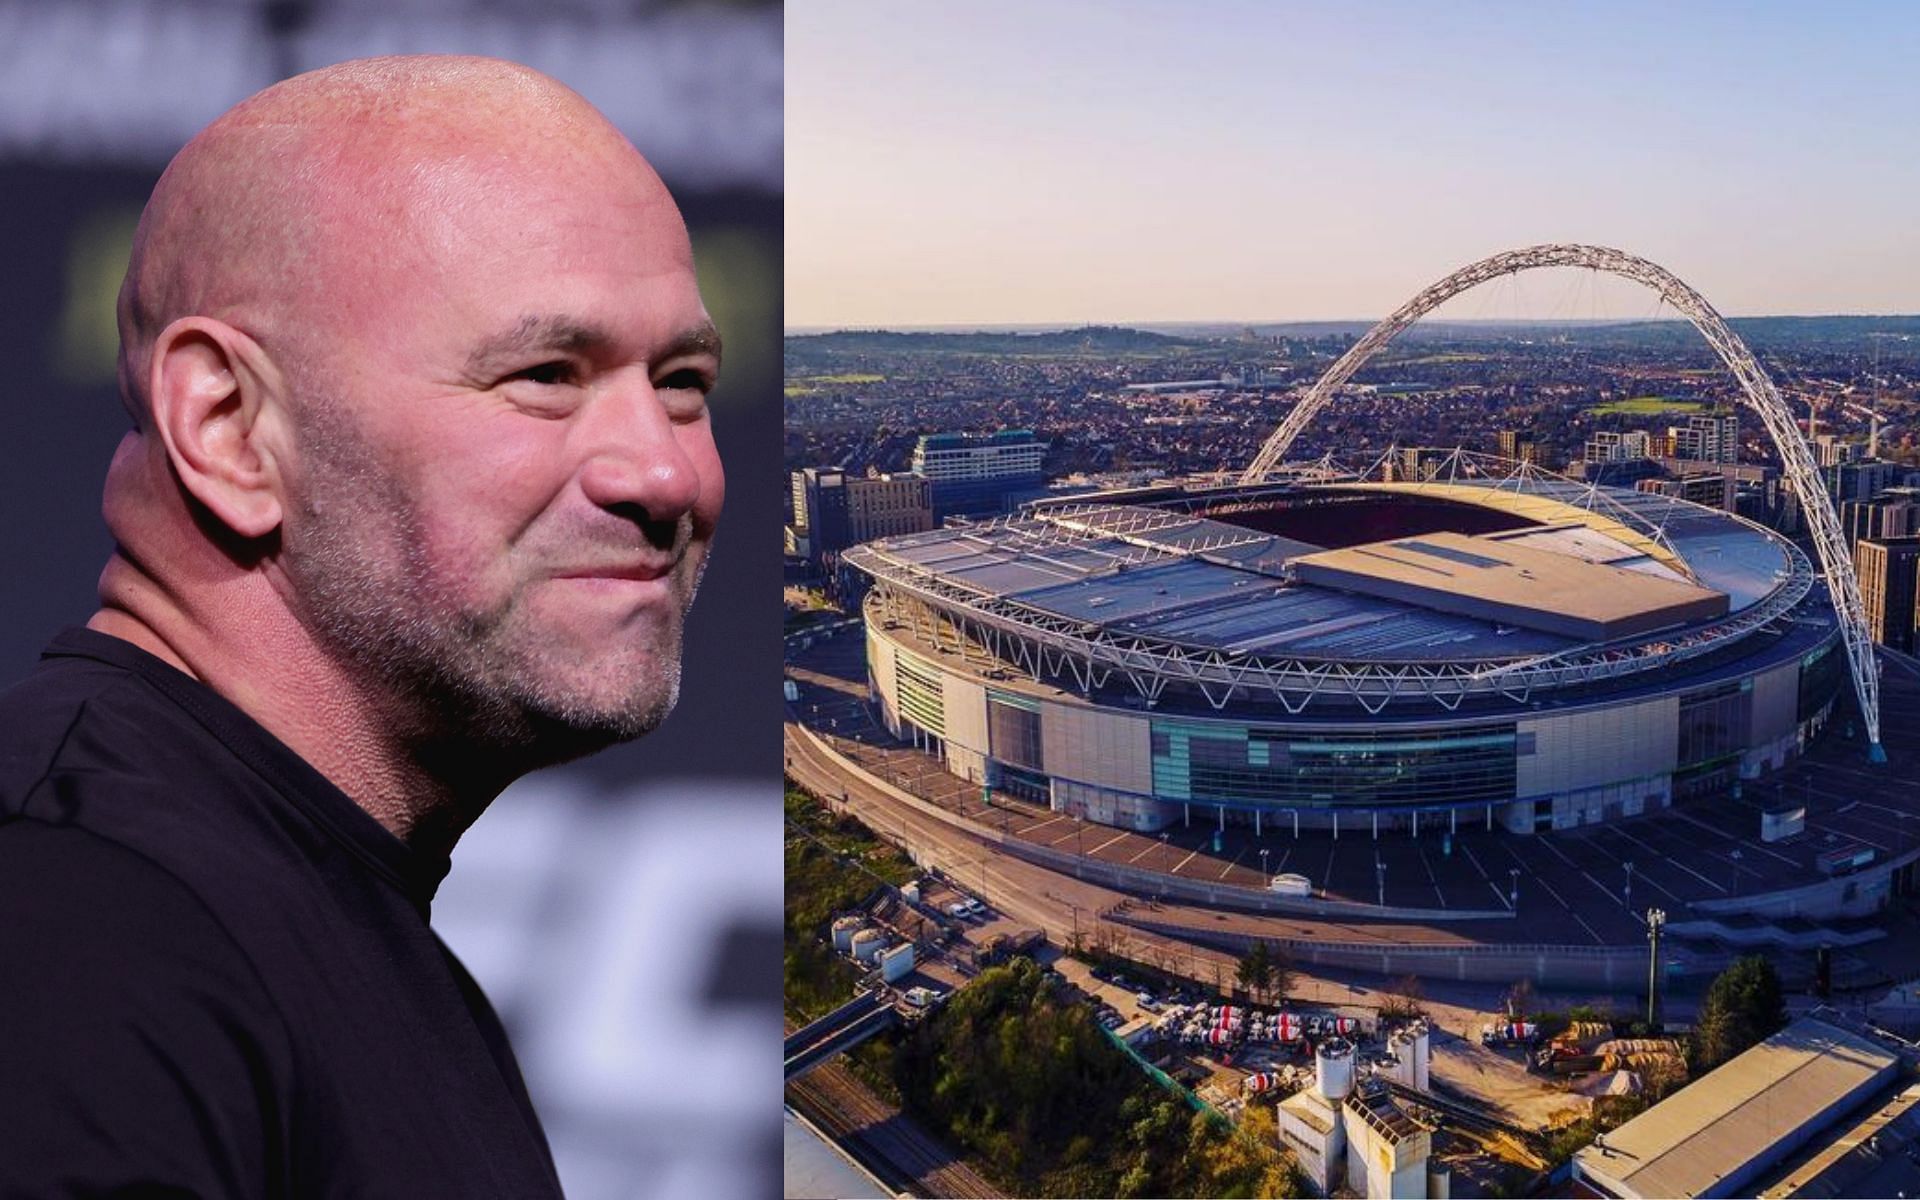 Dana White (left) Wembley stadium (right) (image courtesy @wembleystadium Instagram)